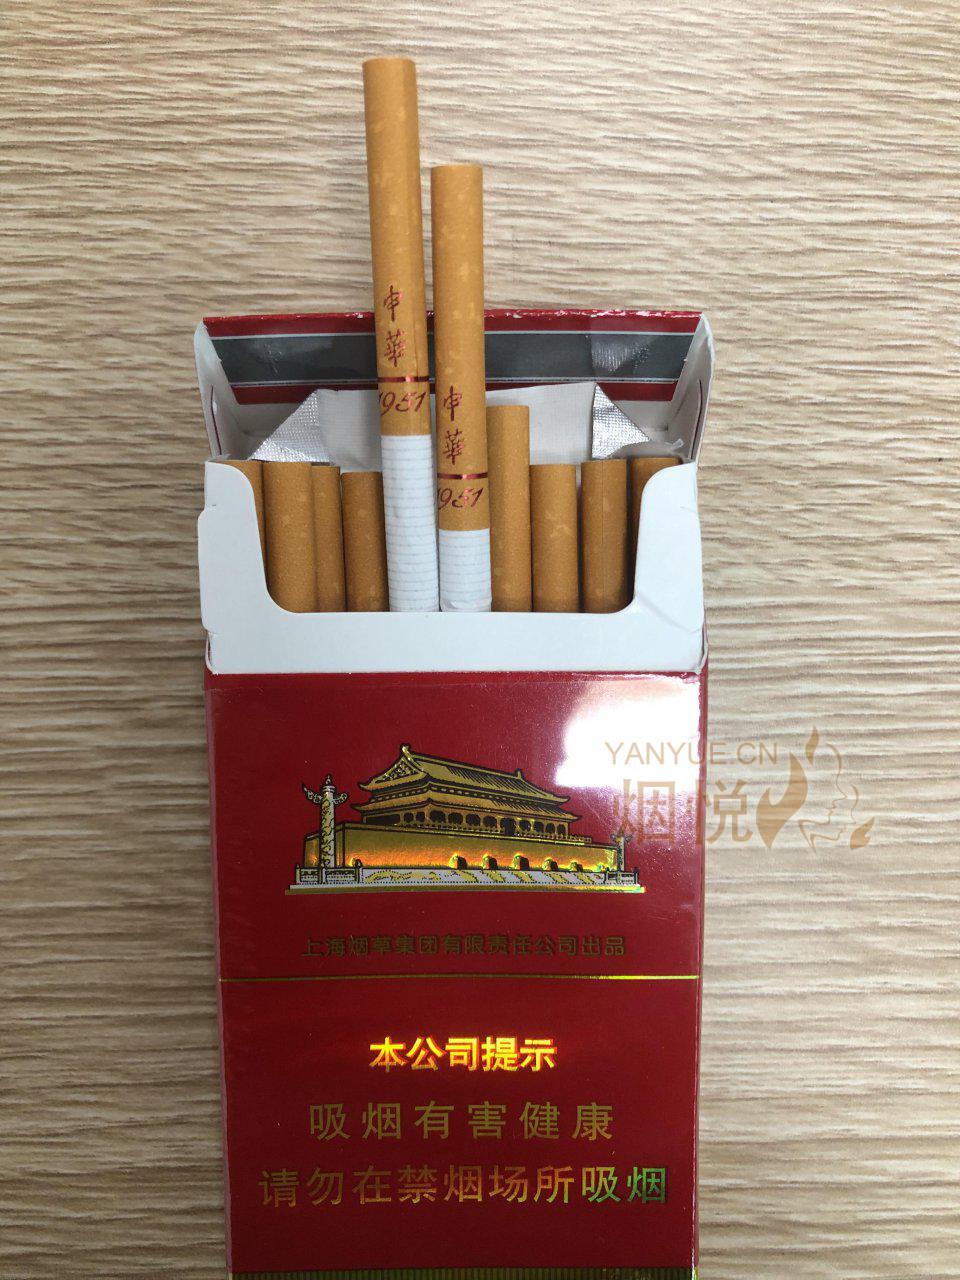 新款中华细支香烟图片